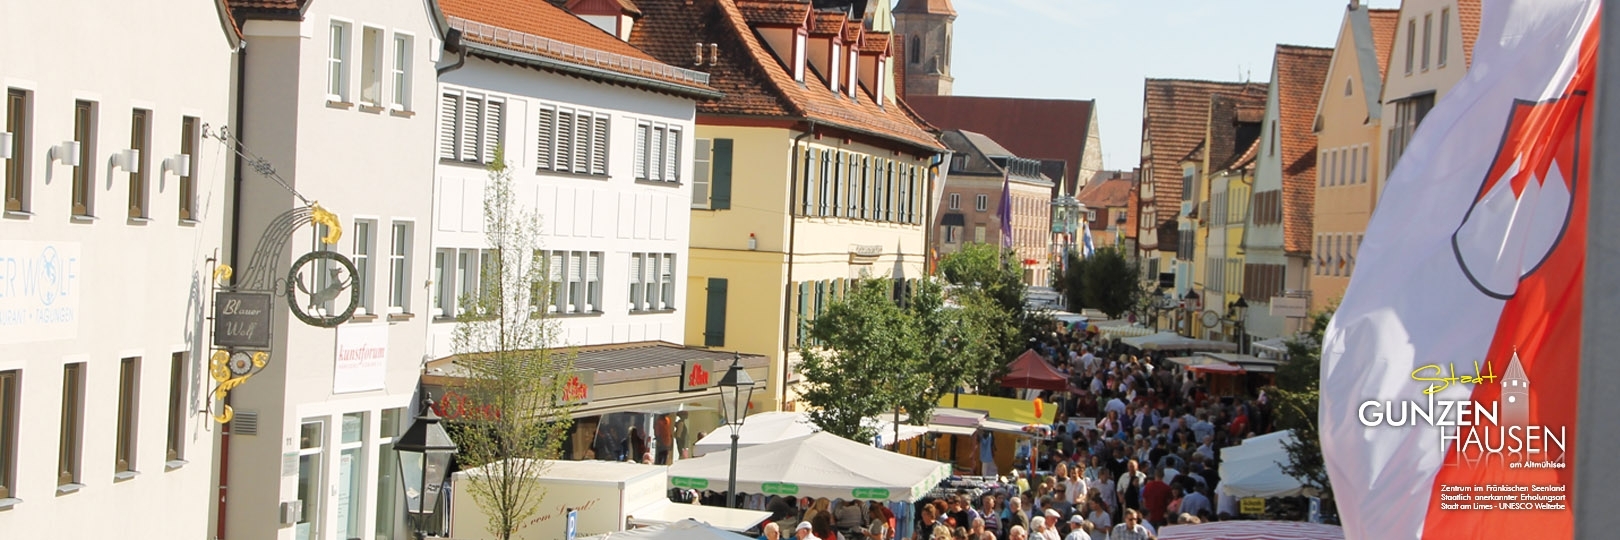 Stadt Gunzenhausen - Blick auf den Marktplatz